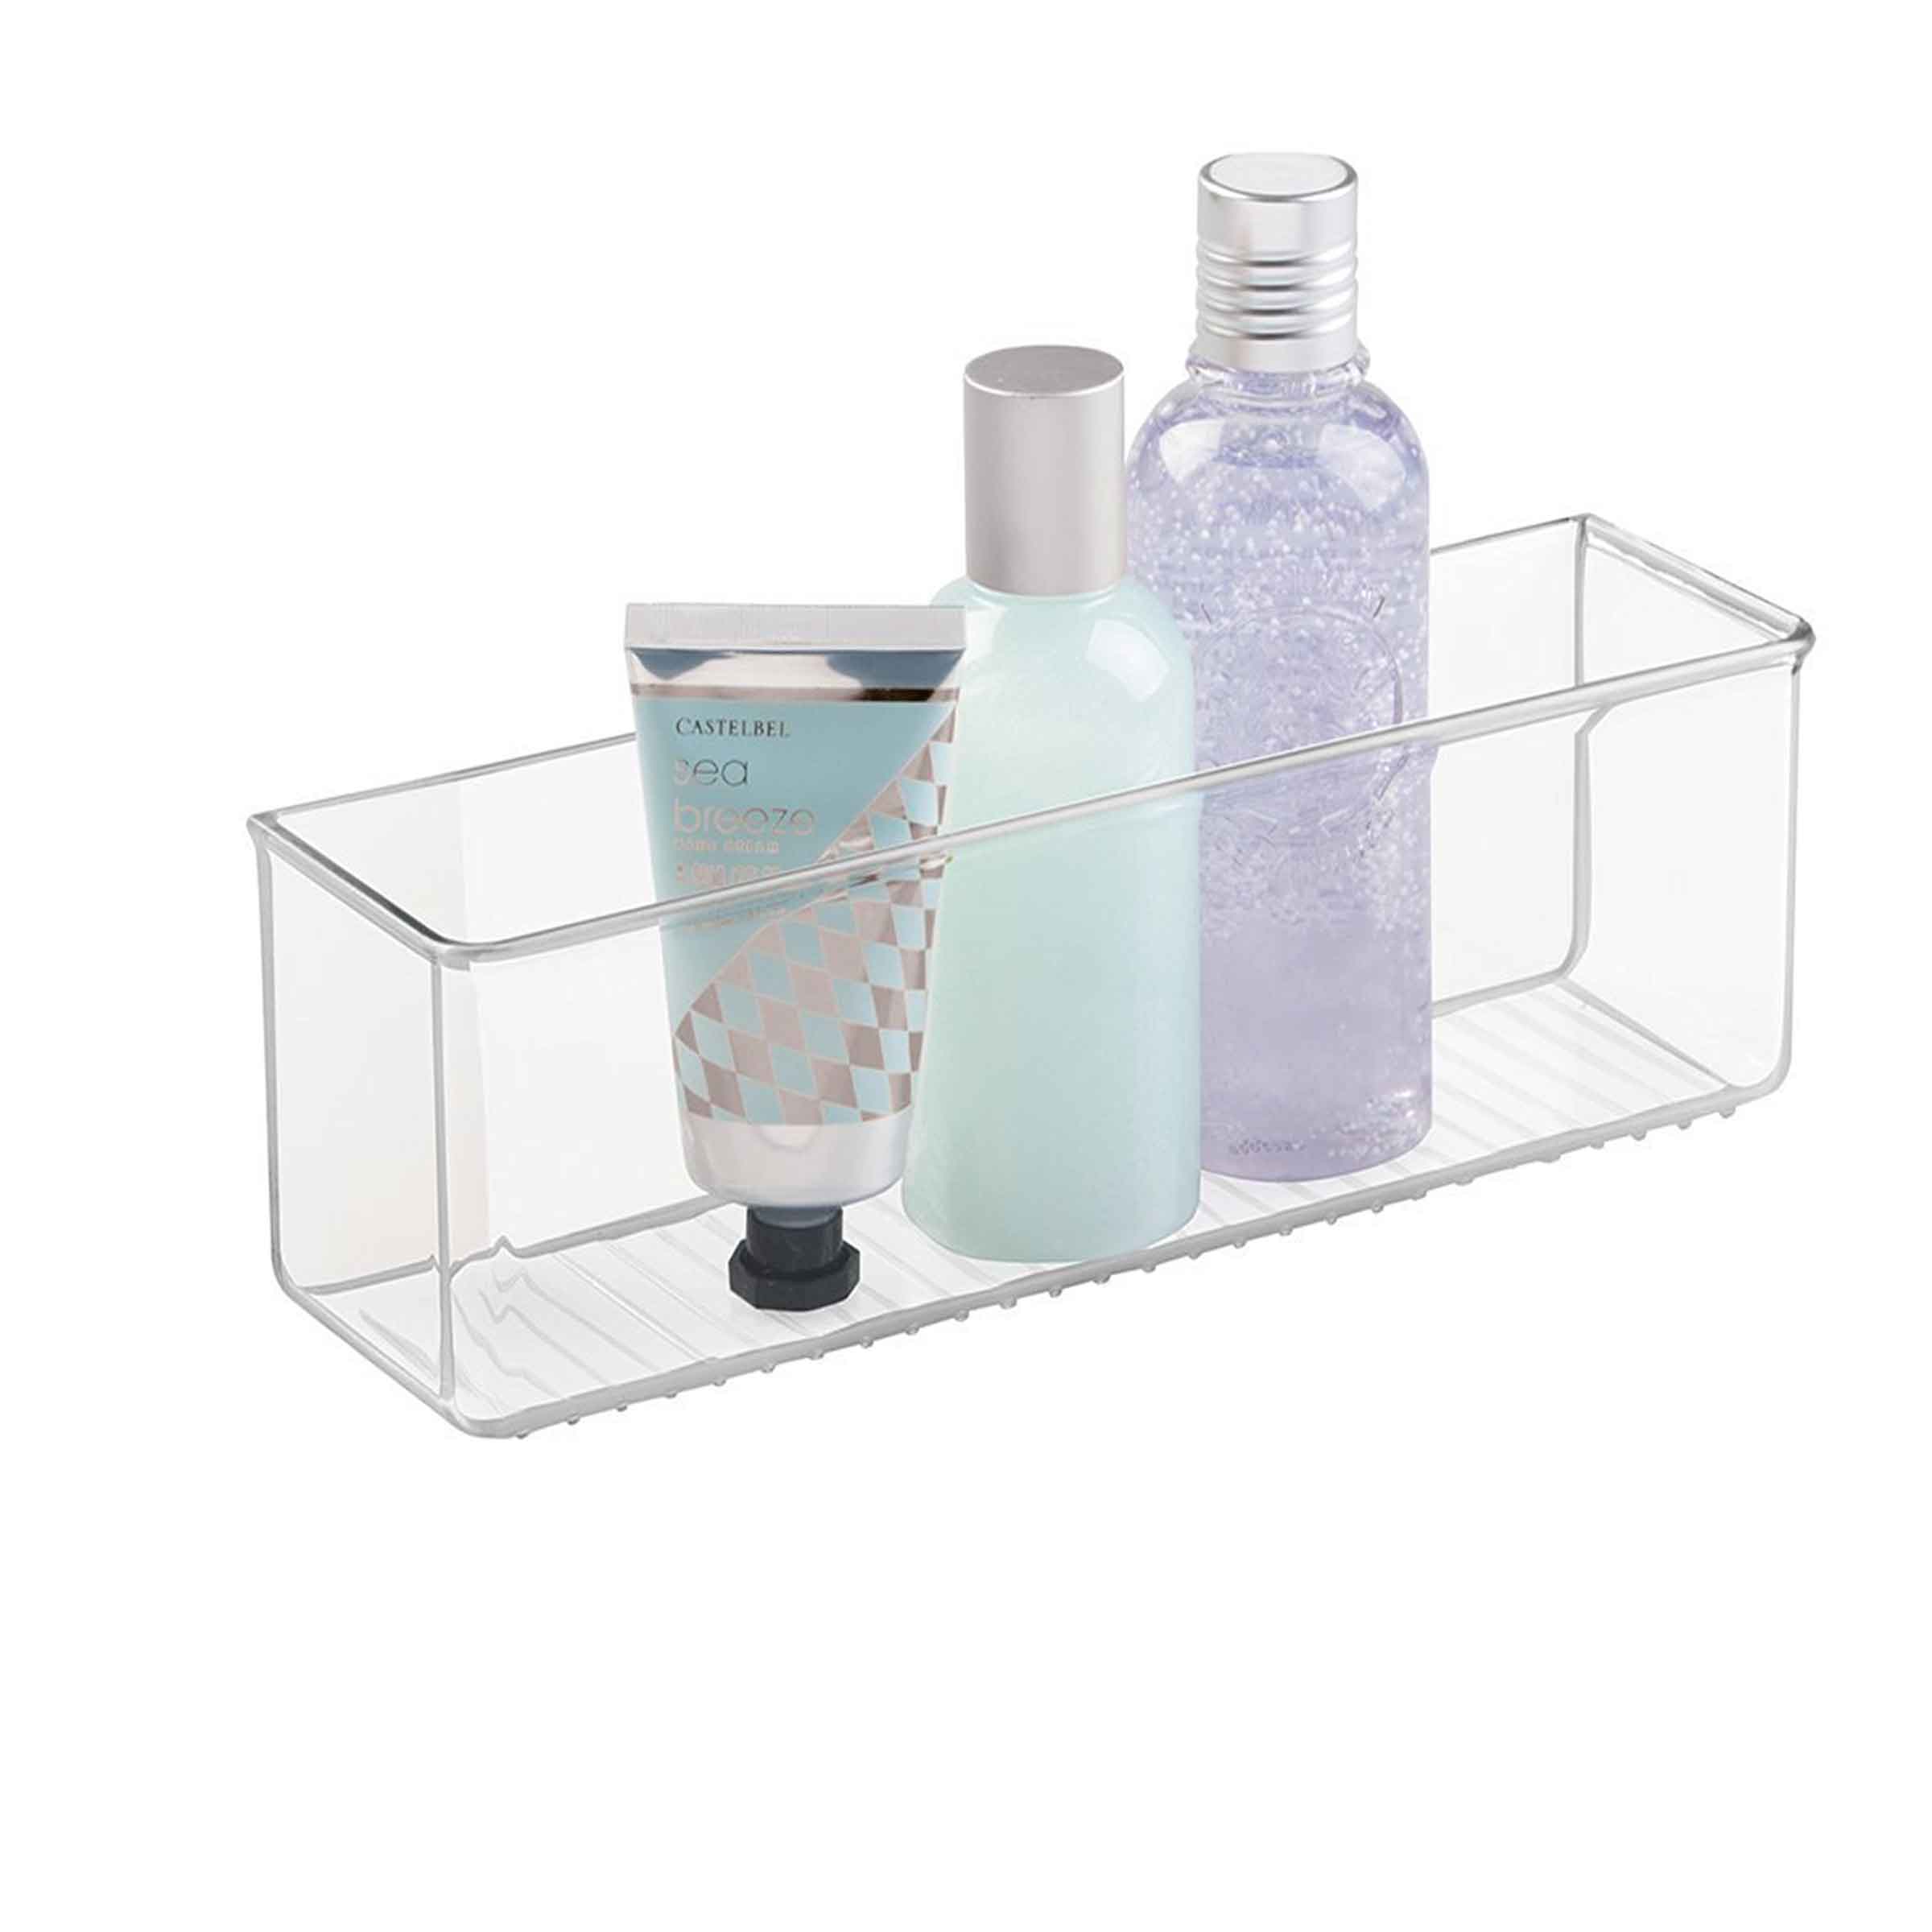 Bac de rangement adhésif pour salle de bain en plastique transparent taille L